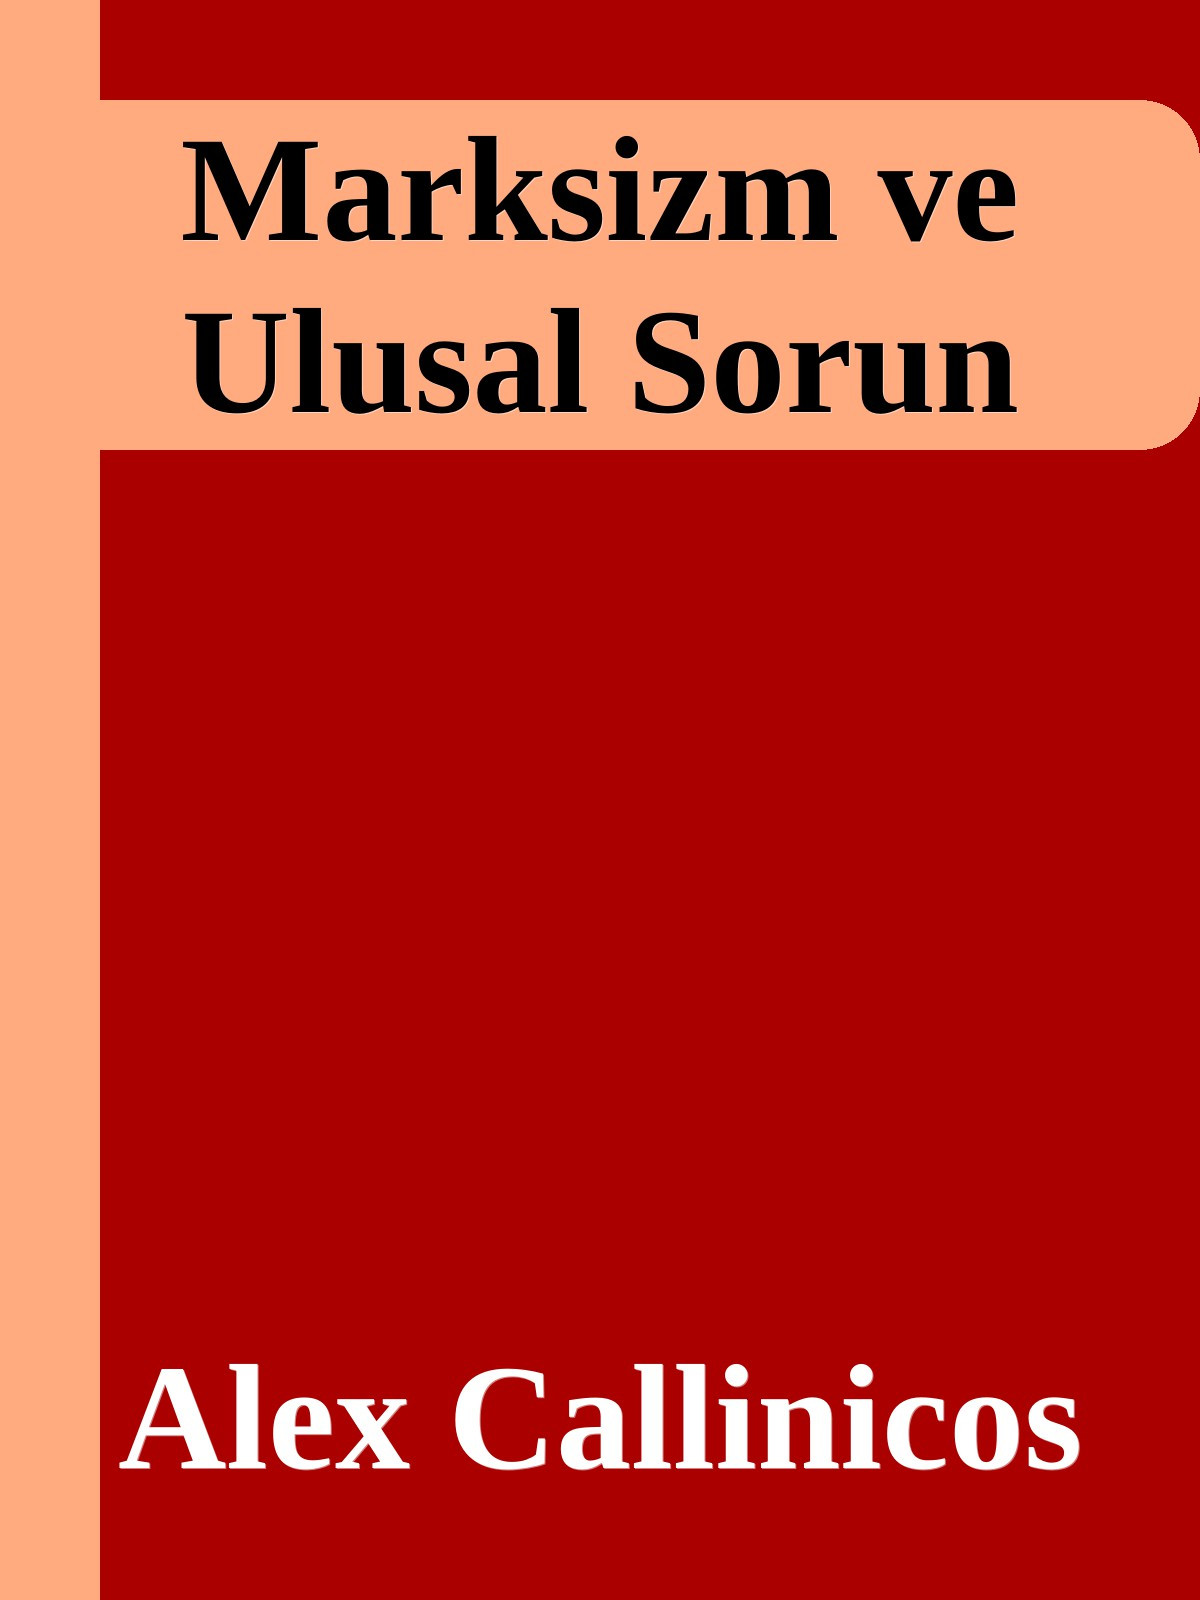 Marksizm ve Ulusal Sorun Kitap Kapağı